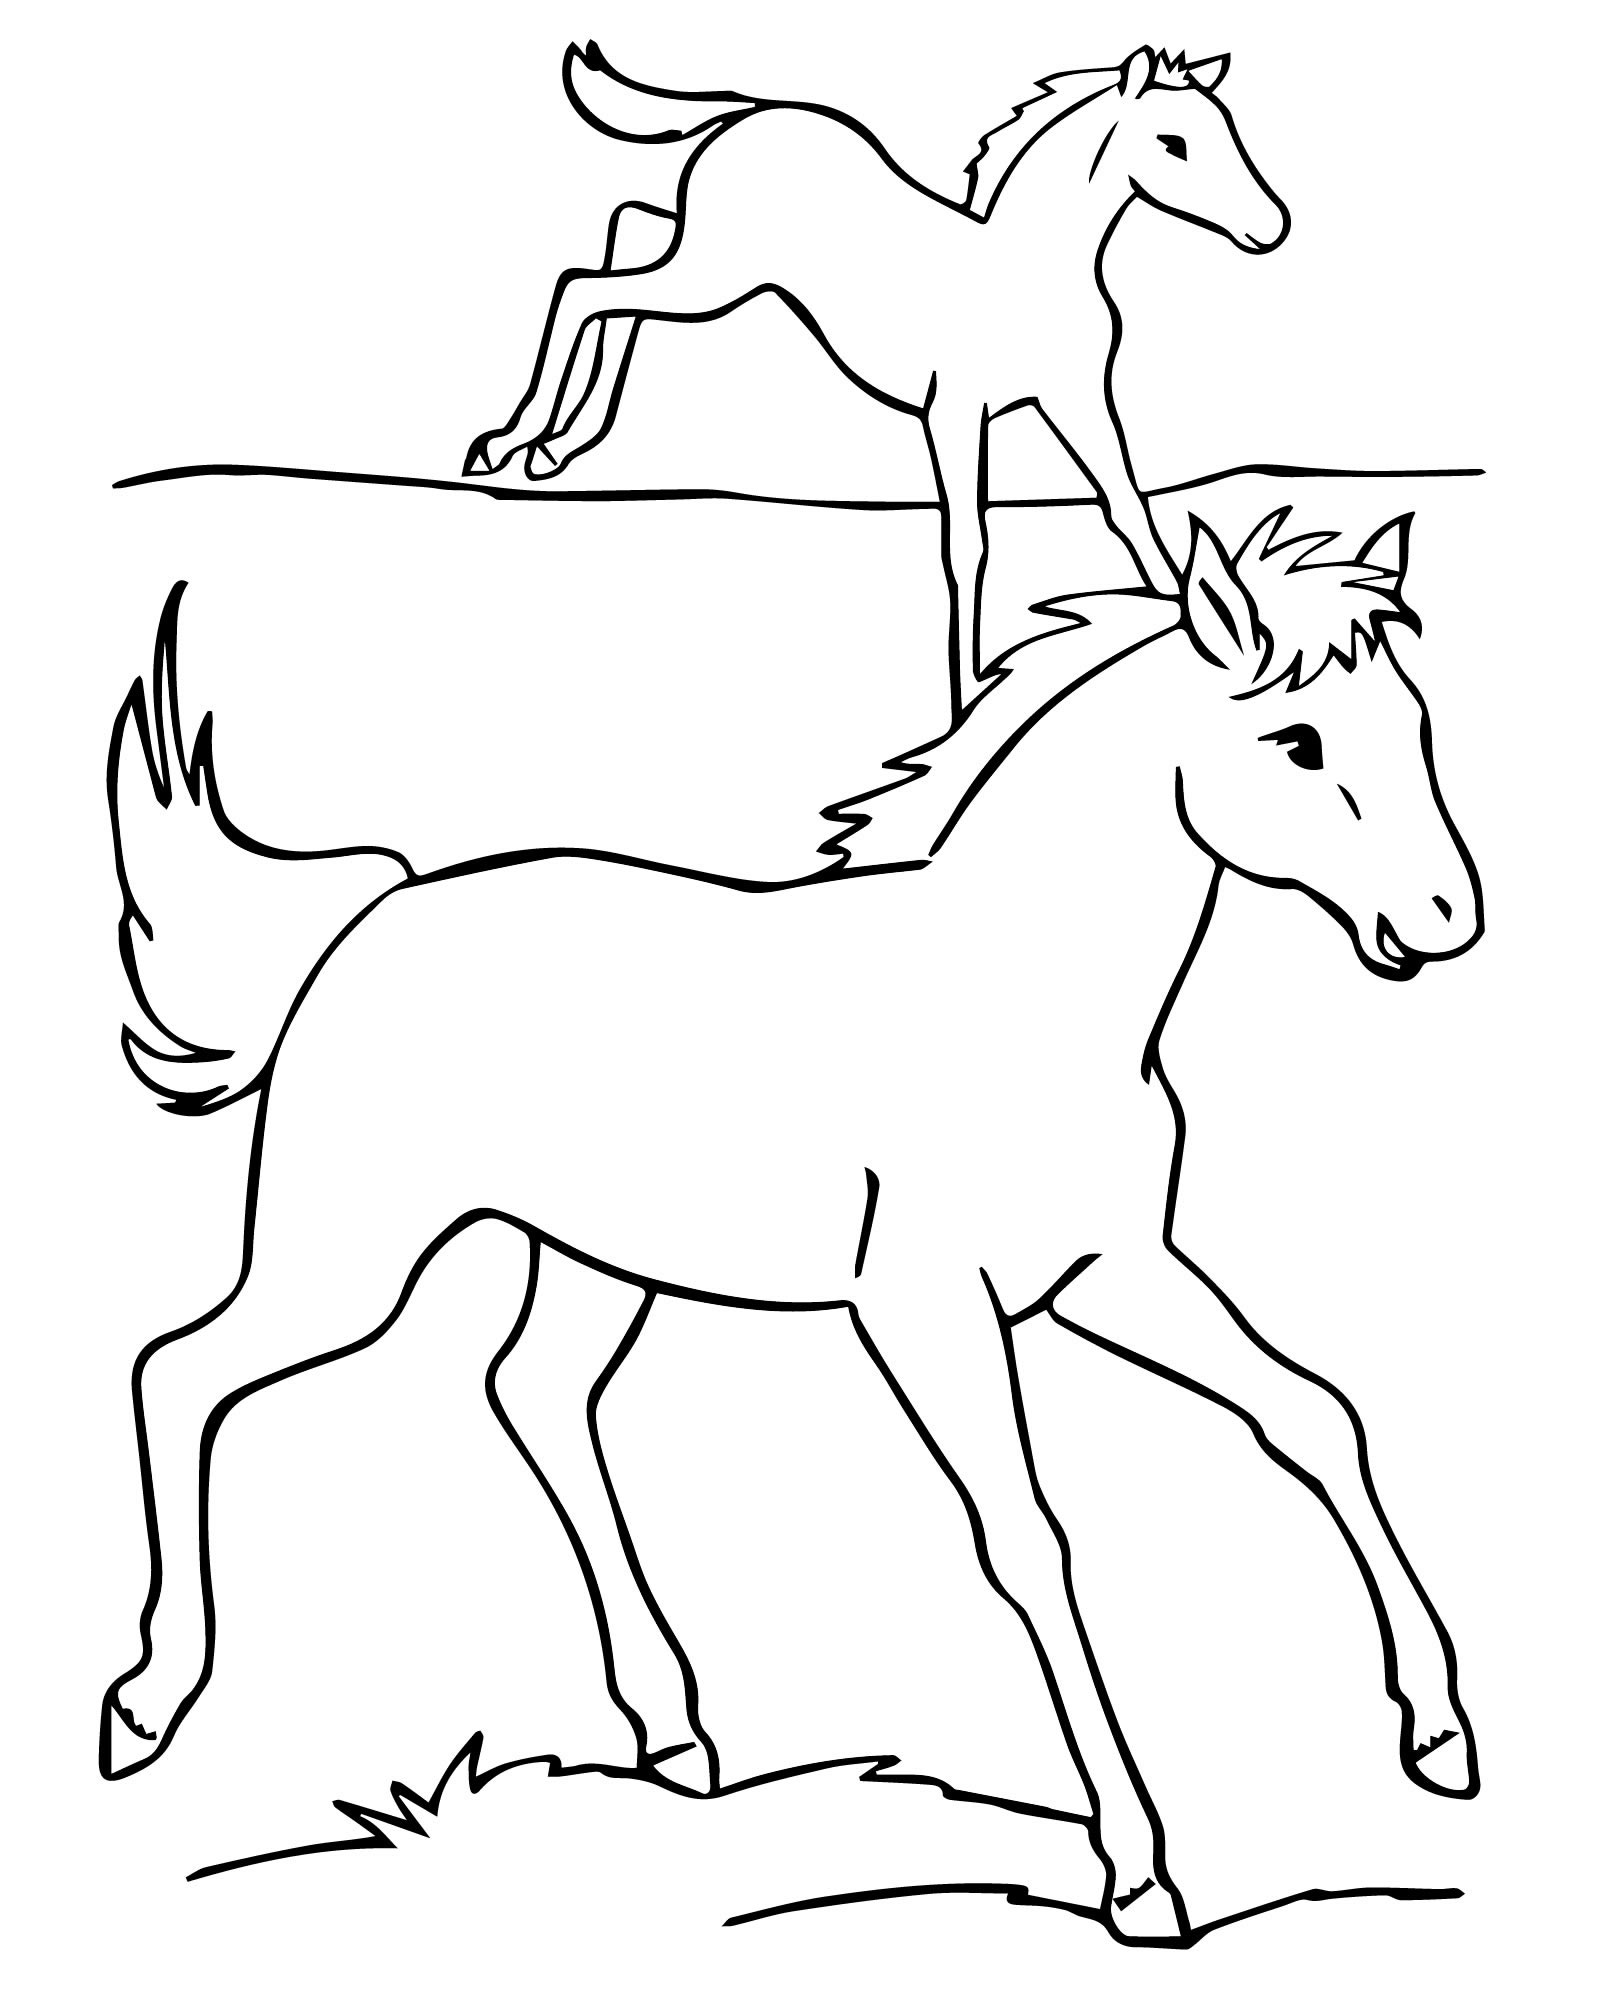 Раскраска Лошадь и жеребёнок